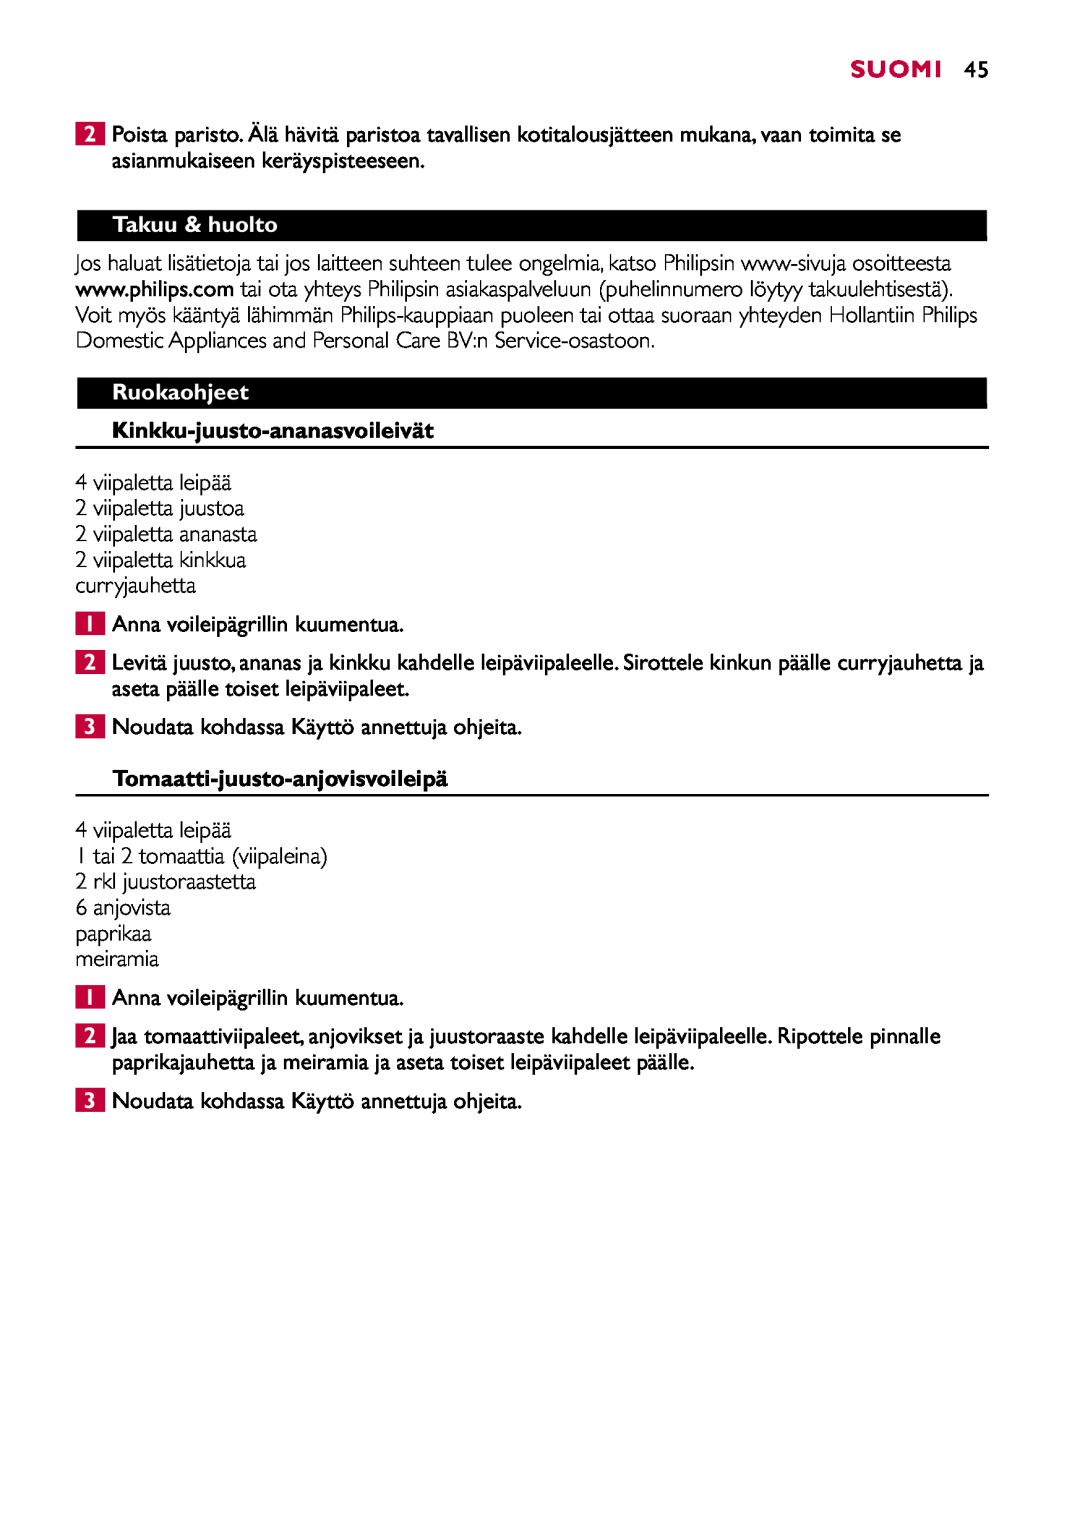 Philips HD2415 manual Takuu & huolto, Ruokaohjeet, Kinkku-juusto-ananasvoileivät, Tomaatti-juusto-anjovisvoileipä, Suomi 